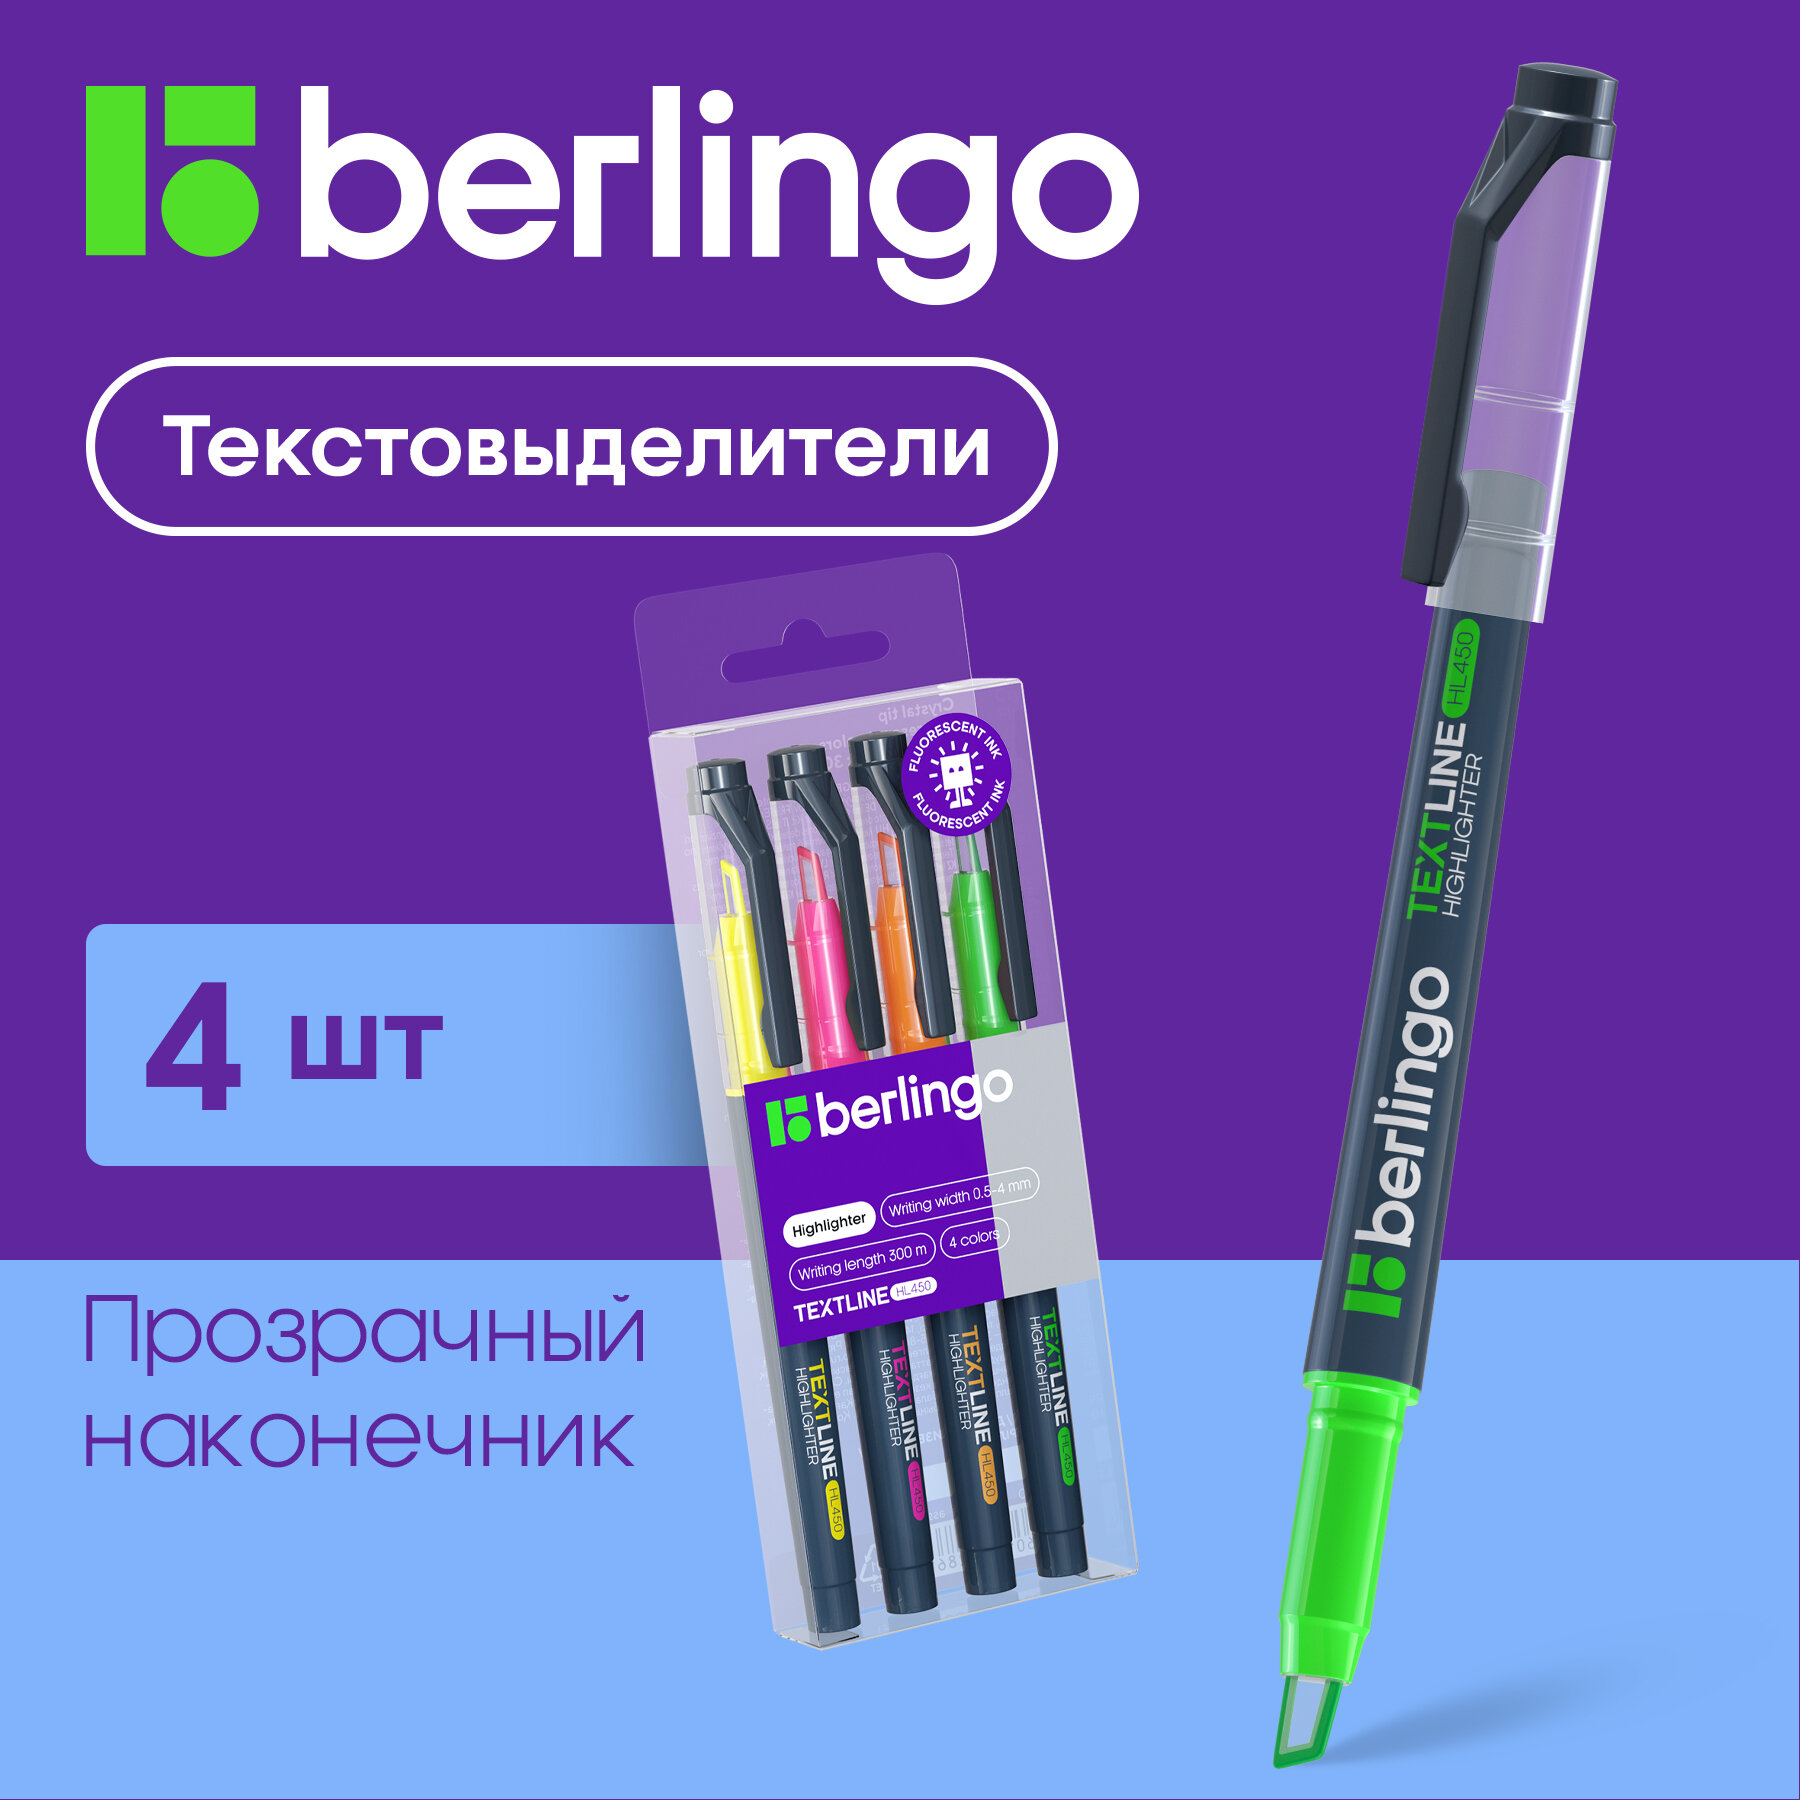 Набор текстовыделителей Berlingo "Textline HL450", 4 цвета, 0,5-4 мм.